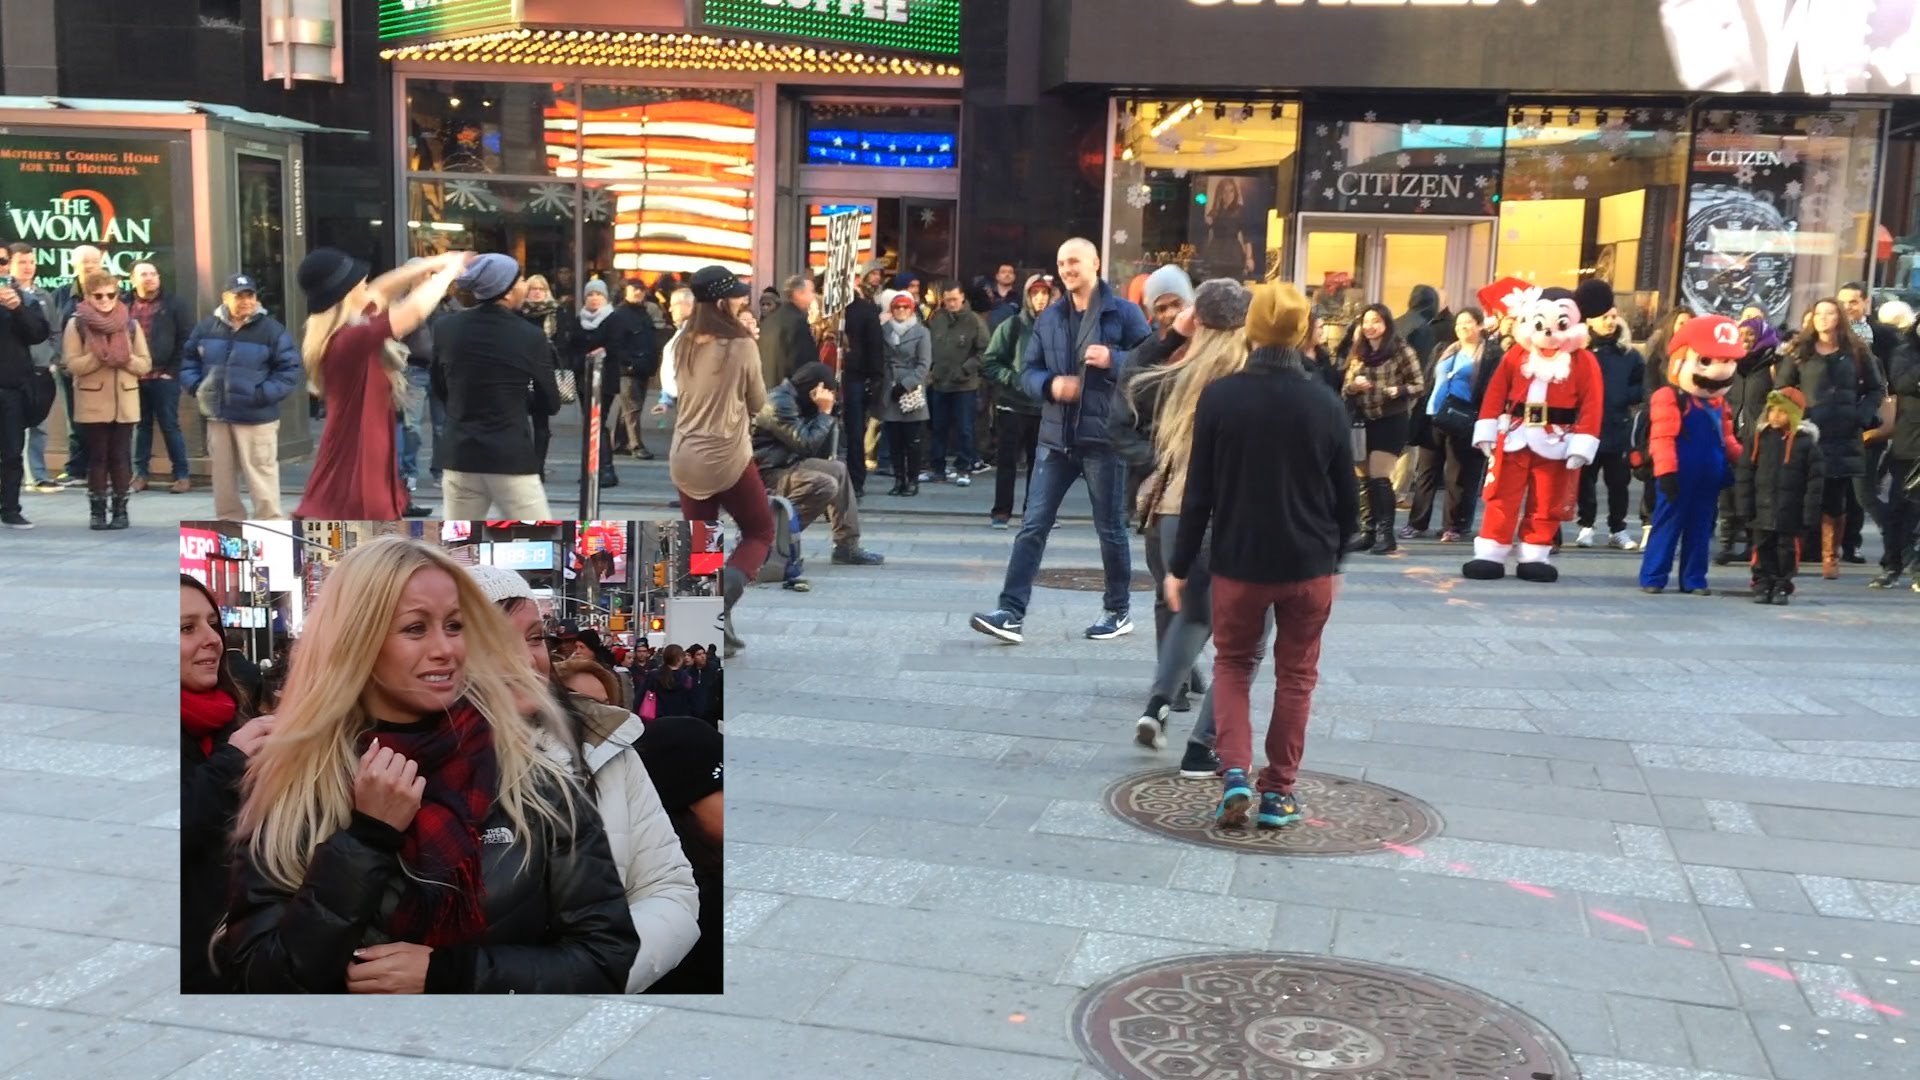 VIDEO: Iespaidīgs bildinājums pašā Ņujorkas centrā! (NYC Flash Mob Proposal)